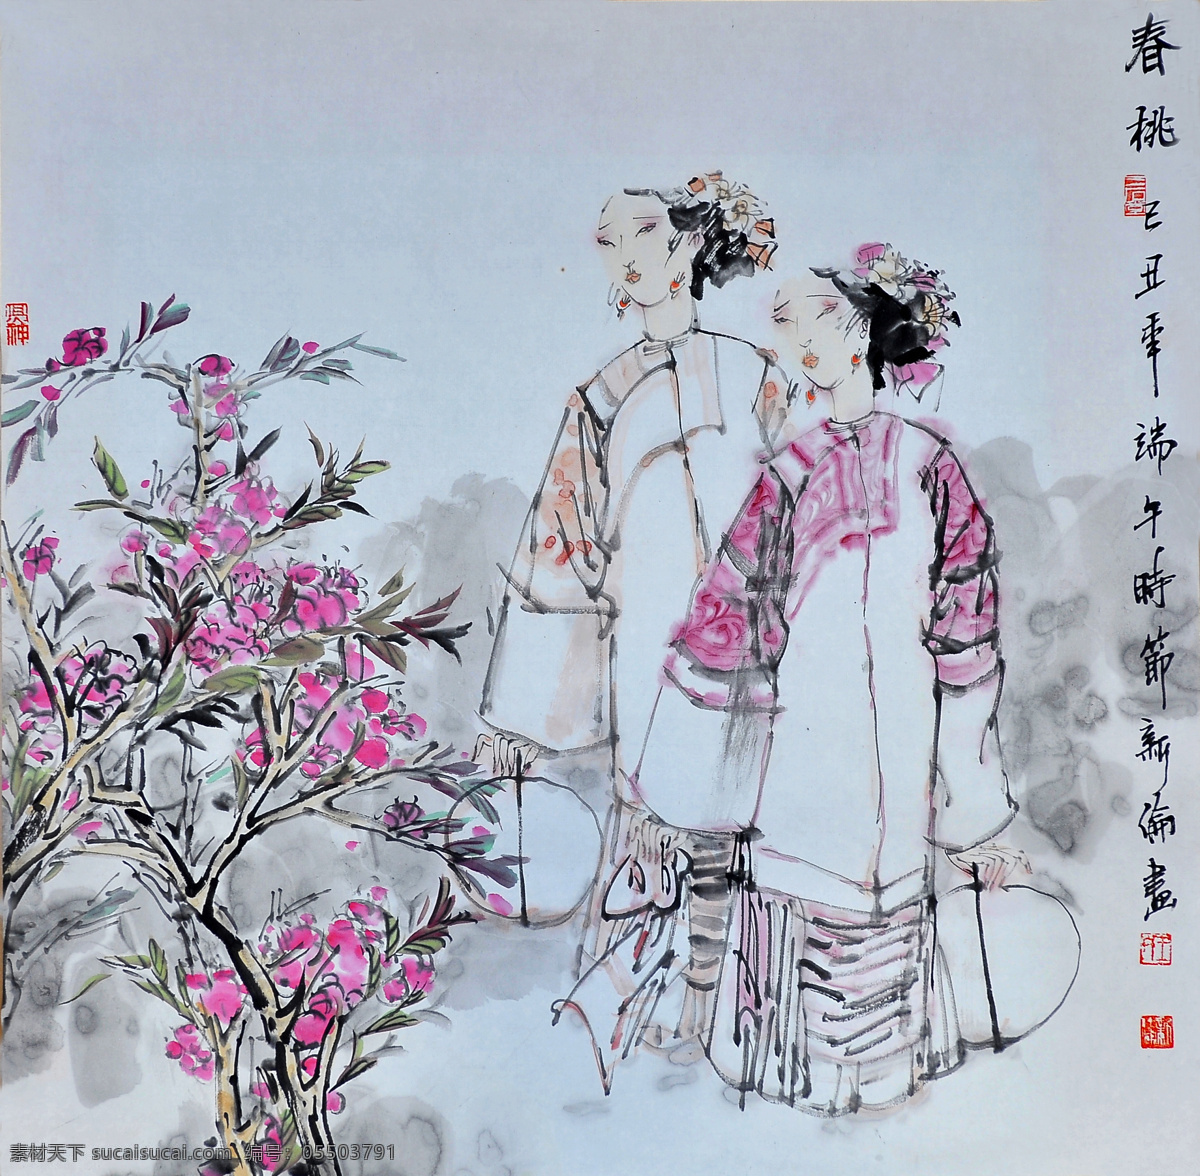 春桃 人物画 中国画 设计素材 人物画篇 中国画篇 书画美术 灰色